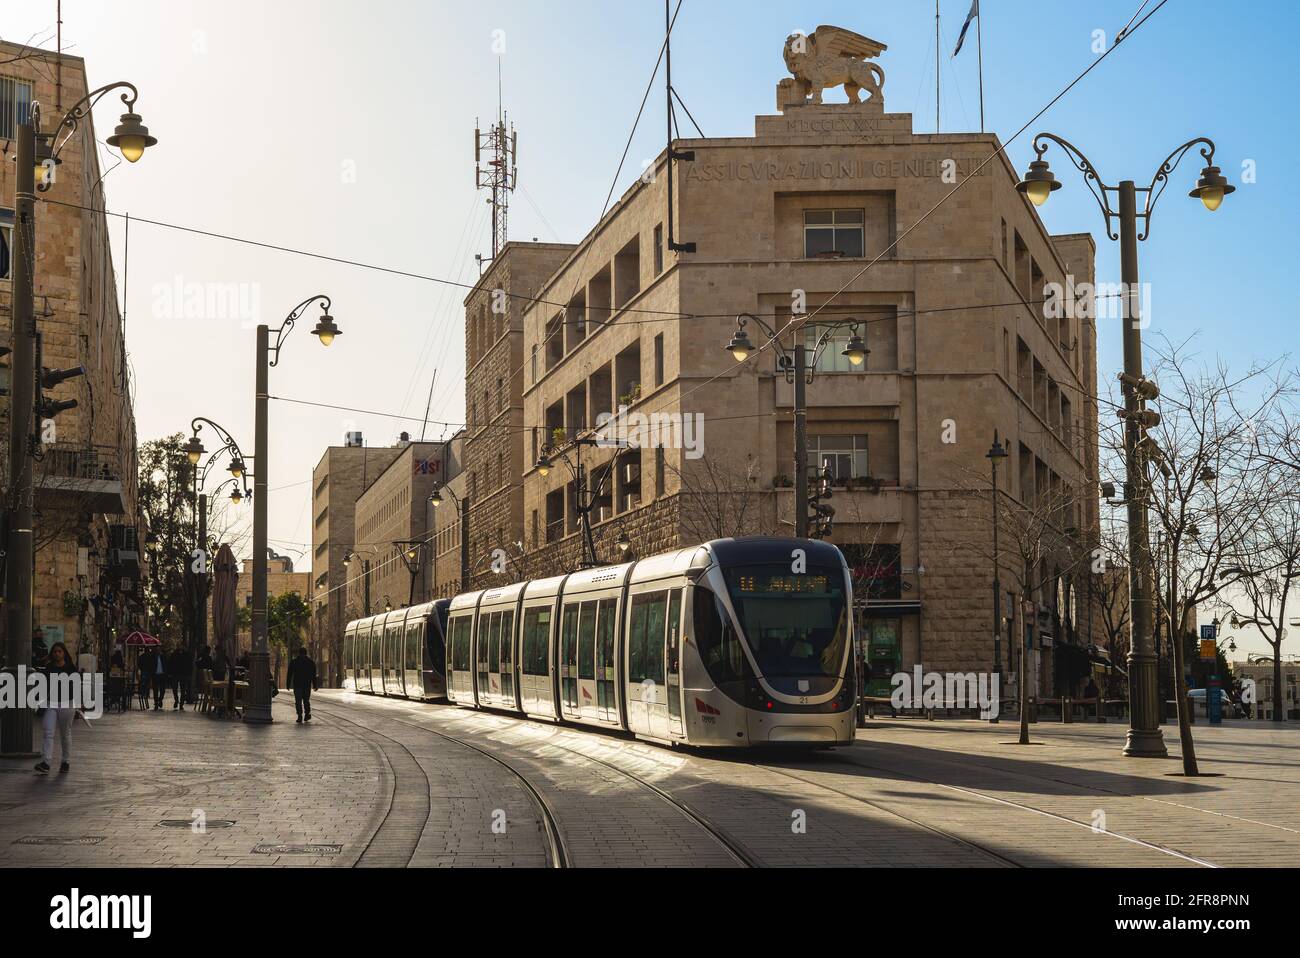 13 marzo 2019: Linea rossa della ferrovia leggera di Gerusalemme, un sistema ferroviario leggero a Gerusalemme, Israele. La sua costruzione iniziò nel 2002 e terminò nel 2010. La linea Foto Stock